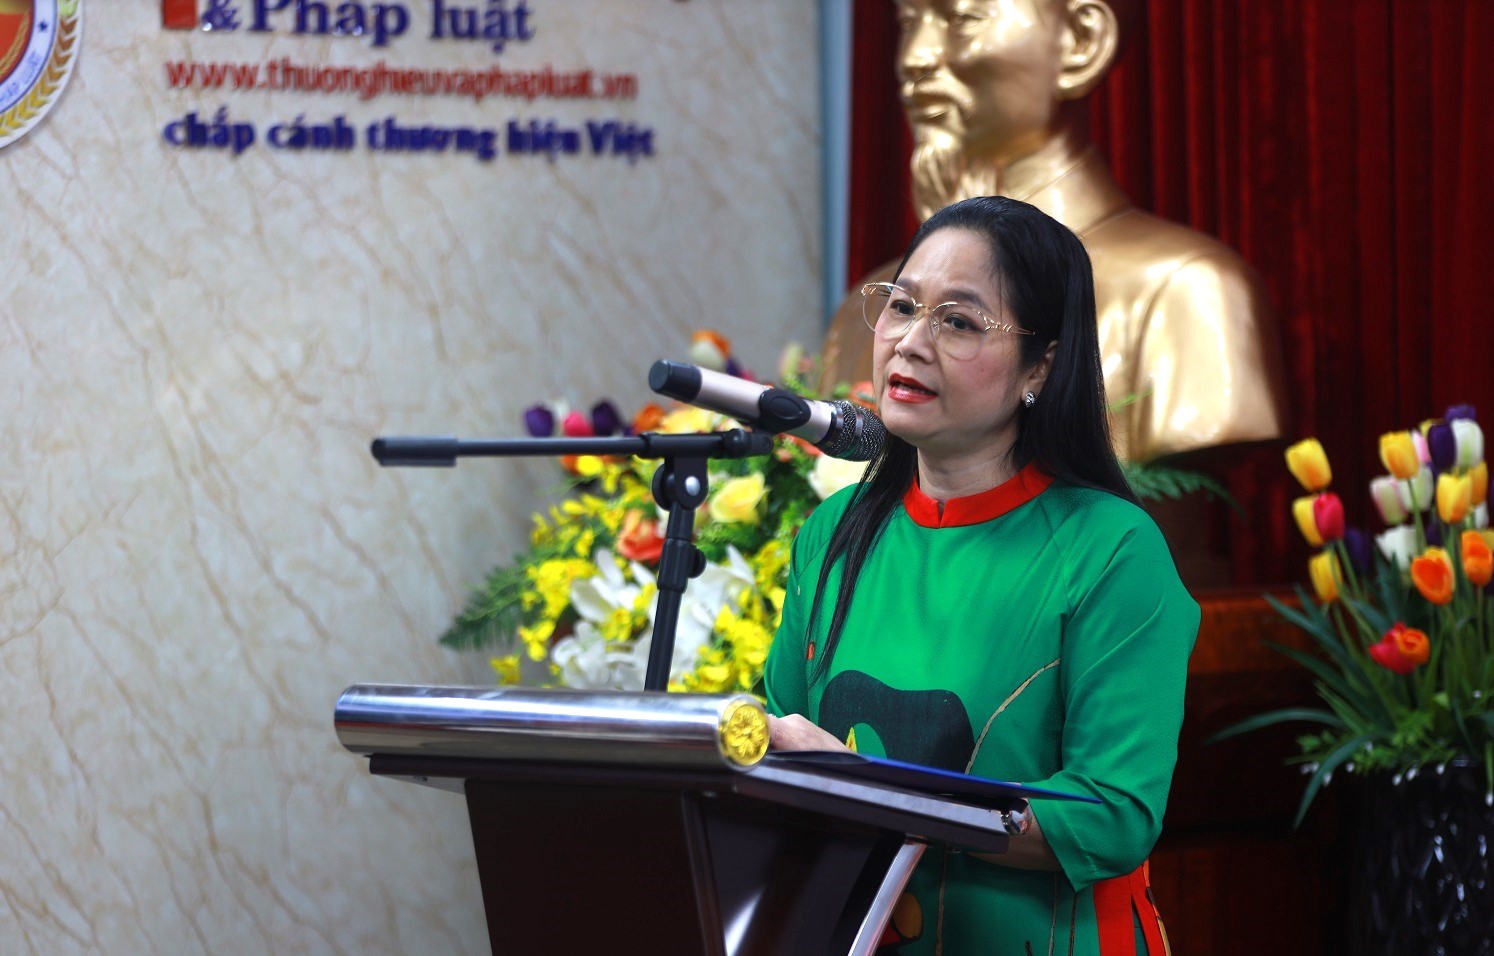 Đồng chí Vũ Thị Hà, Ủy viên Ban Chấp hành, Trưởng Ban Công tác Hội, Hội Nhà báo Việt Nam.